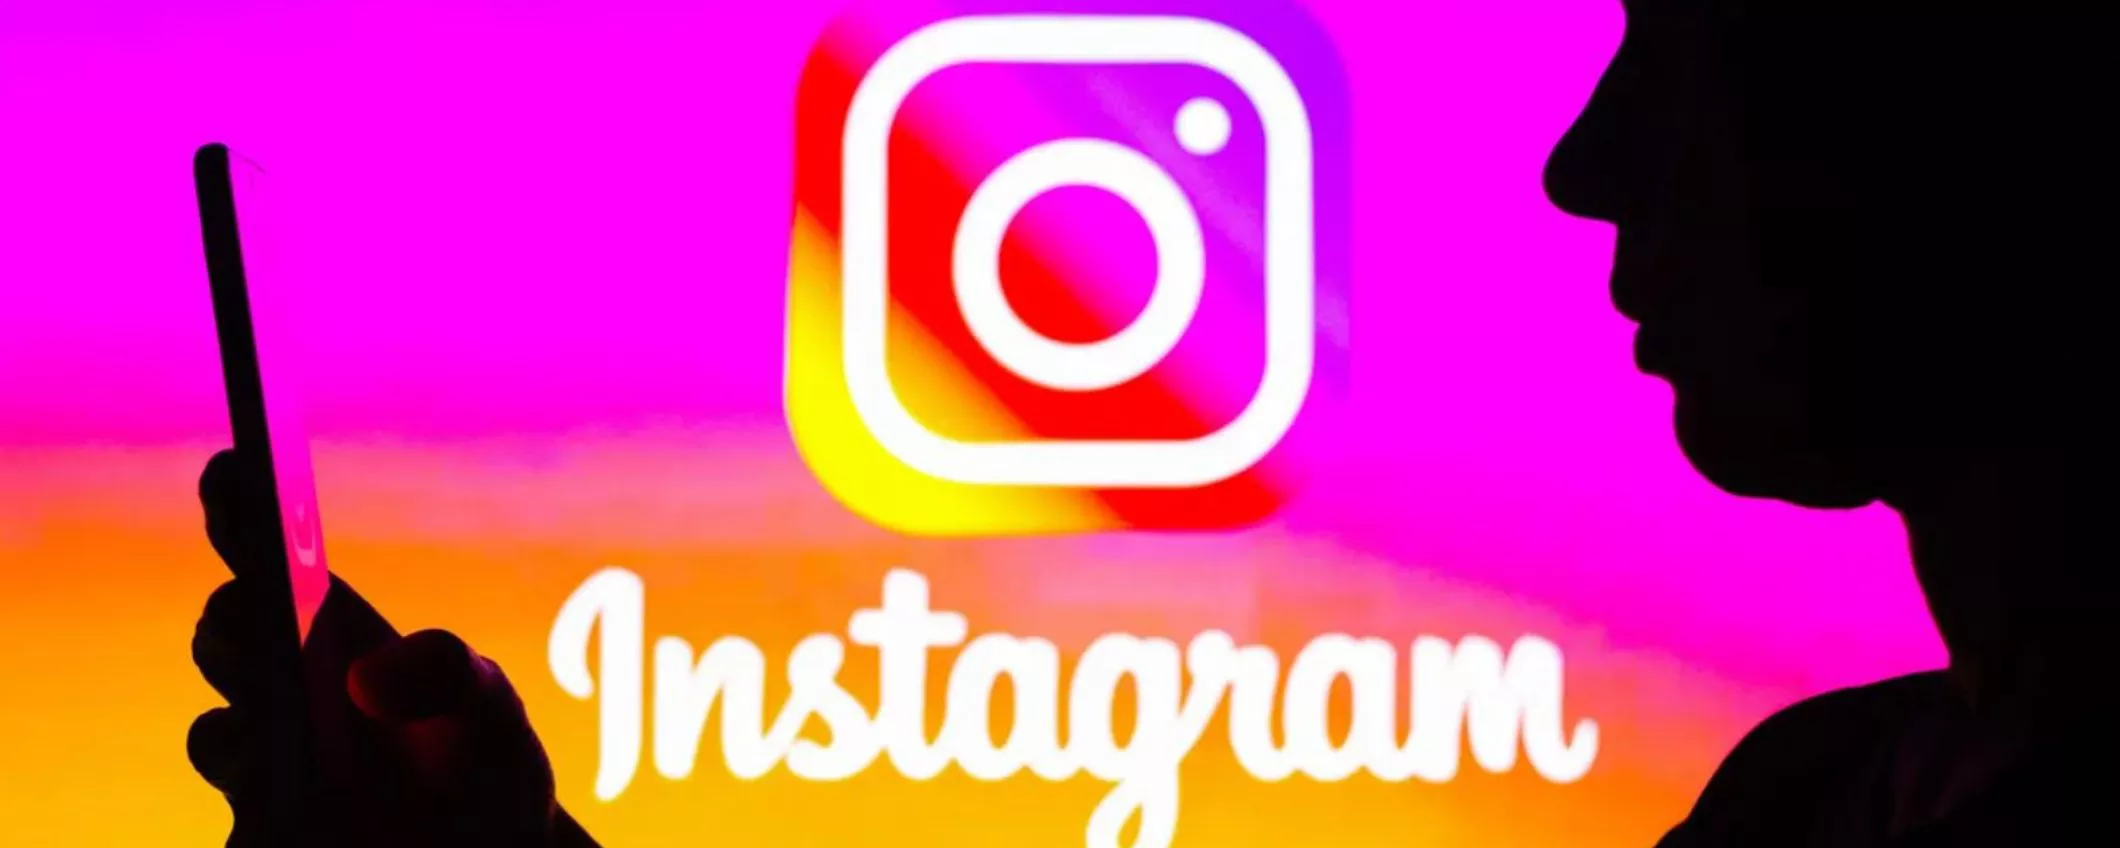 Instagram: in arrivo le cartelle per i messaggi privati